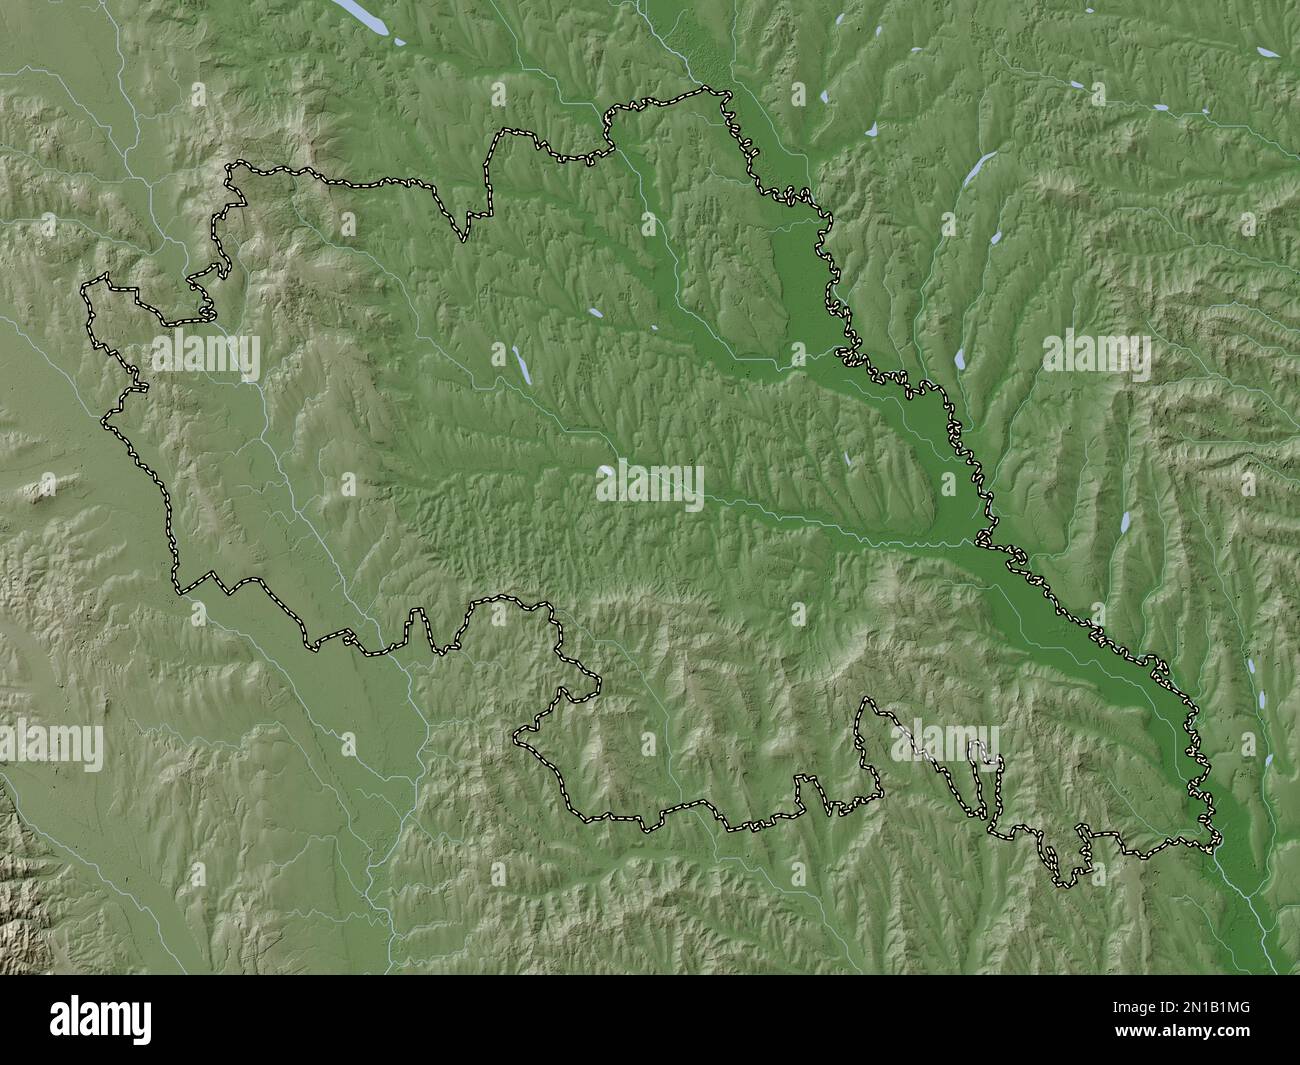 Iasi, comté de Roumanie. Carte d'altitude colorée en style wiki avec lacs et rivières Banque D'Images